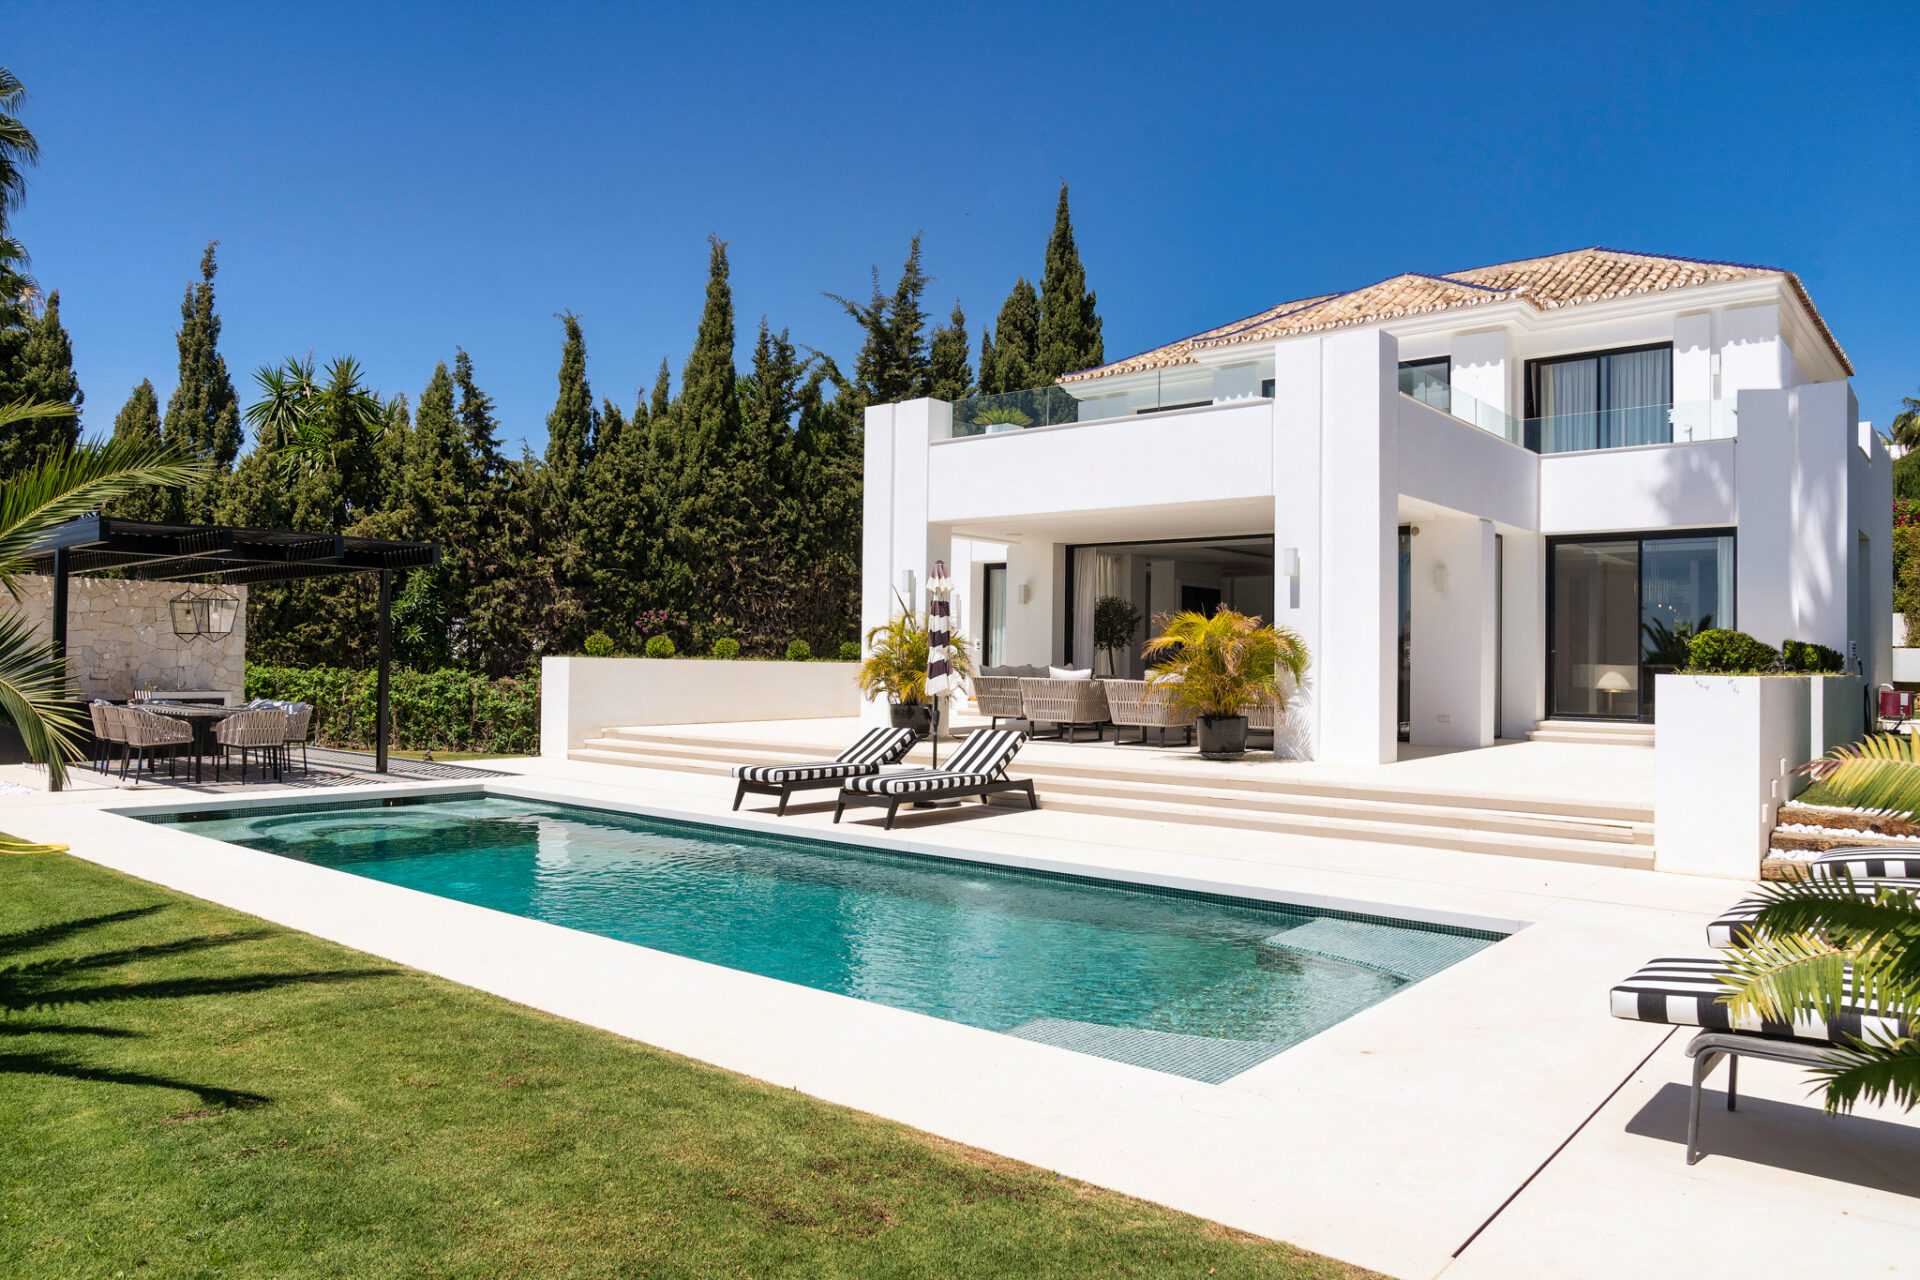 A Remarkable Designer Villa